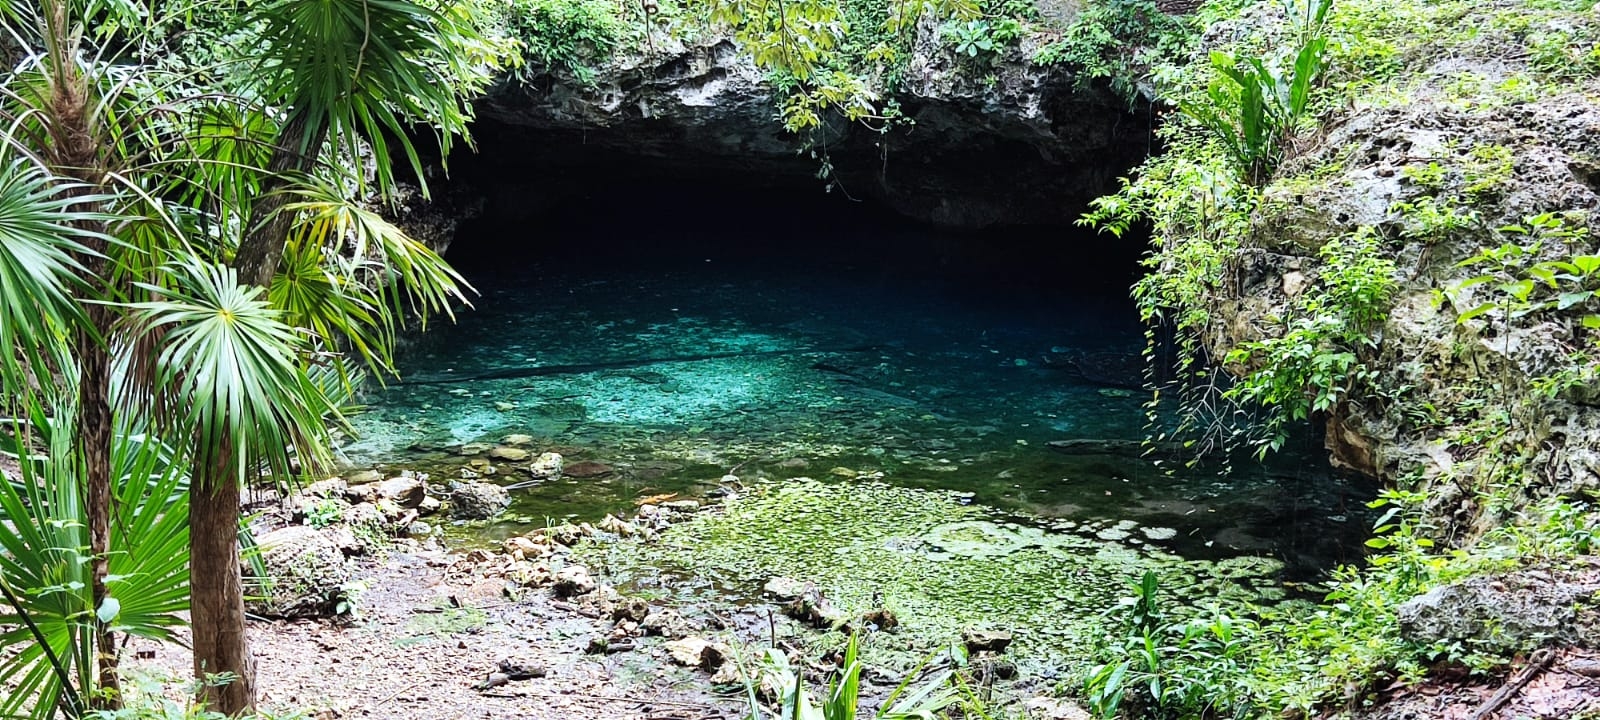 Playa del Carmen: Cenote de Puerto Maya, amenazado por la contaminación y delincuencia